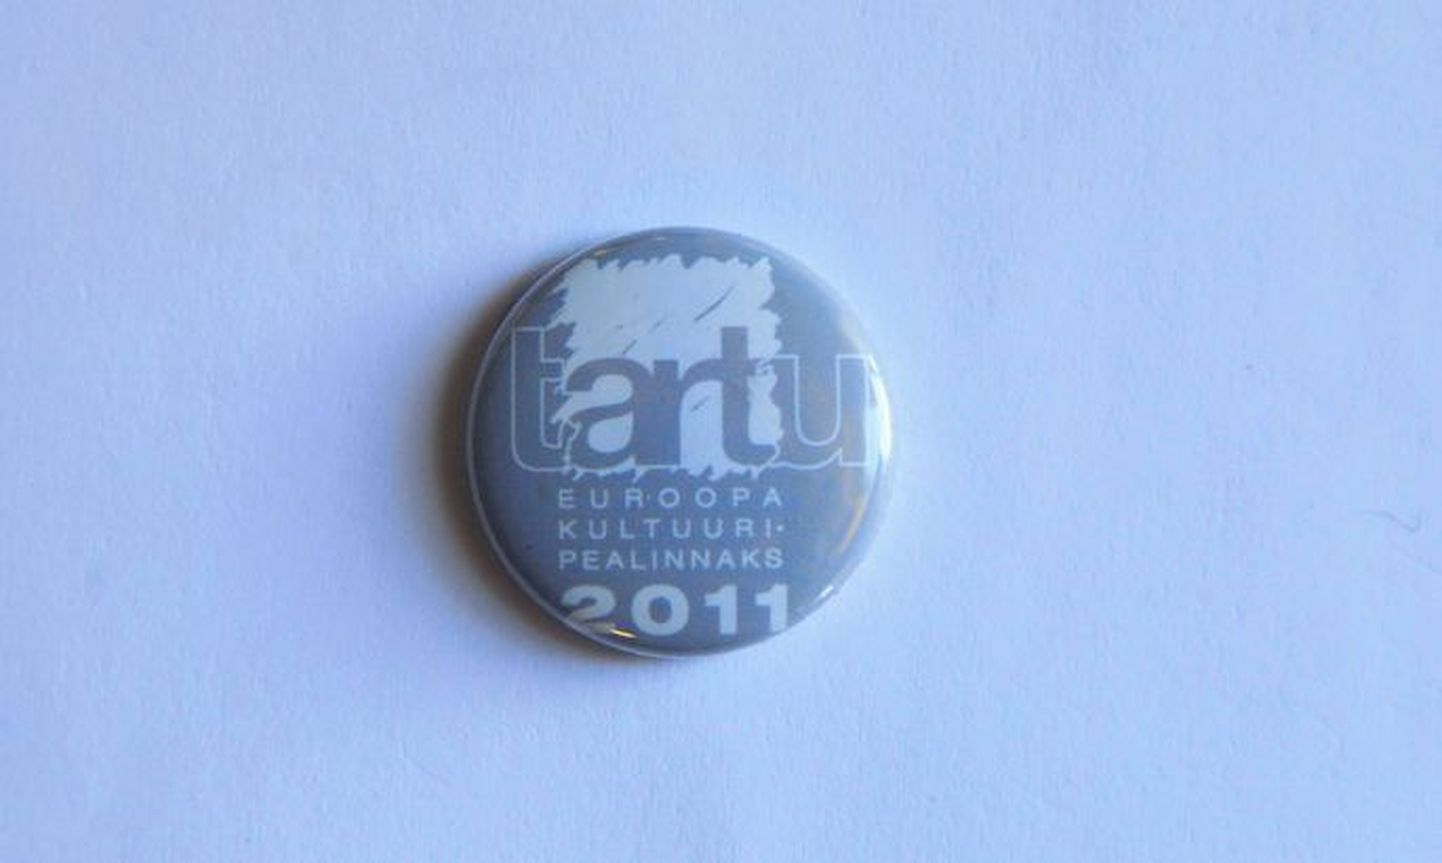 Tartu kandideerib 2024. aastal Euroopa kultuuripealinnaks. See märk on eelmisest kandideerimisest, milles Tartu jäi lõpuks alla Tallinnale.